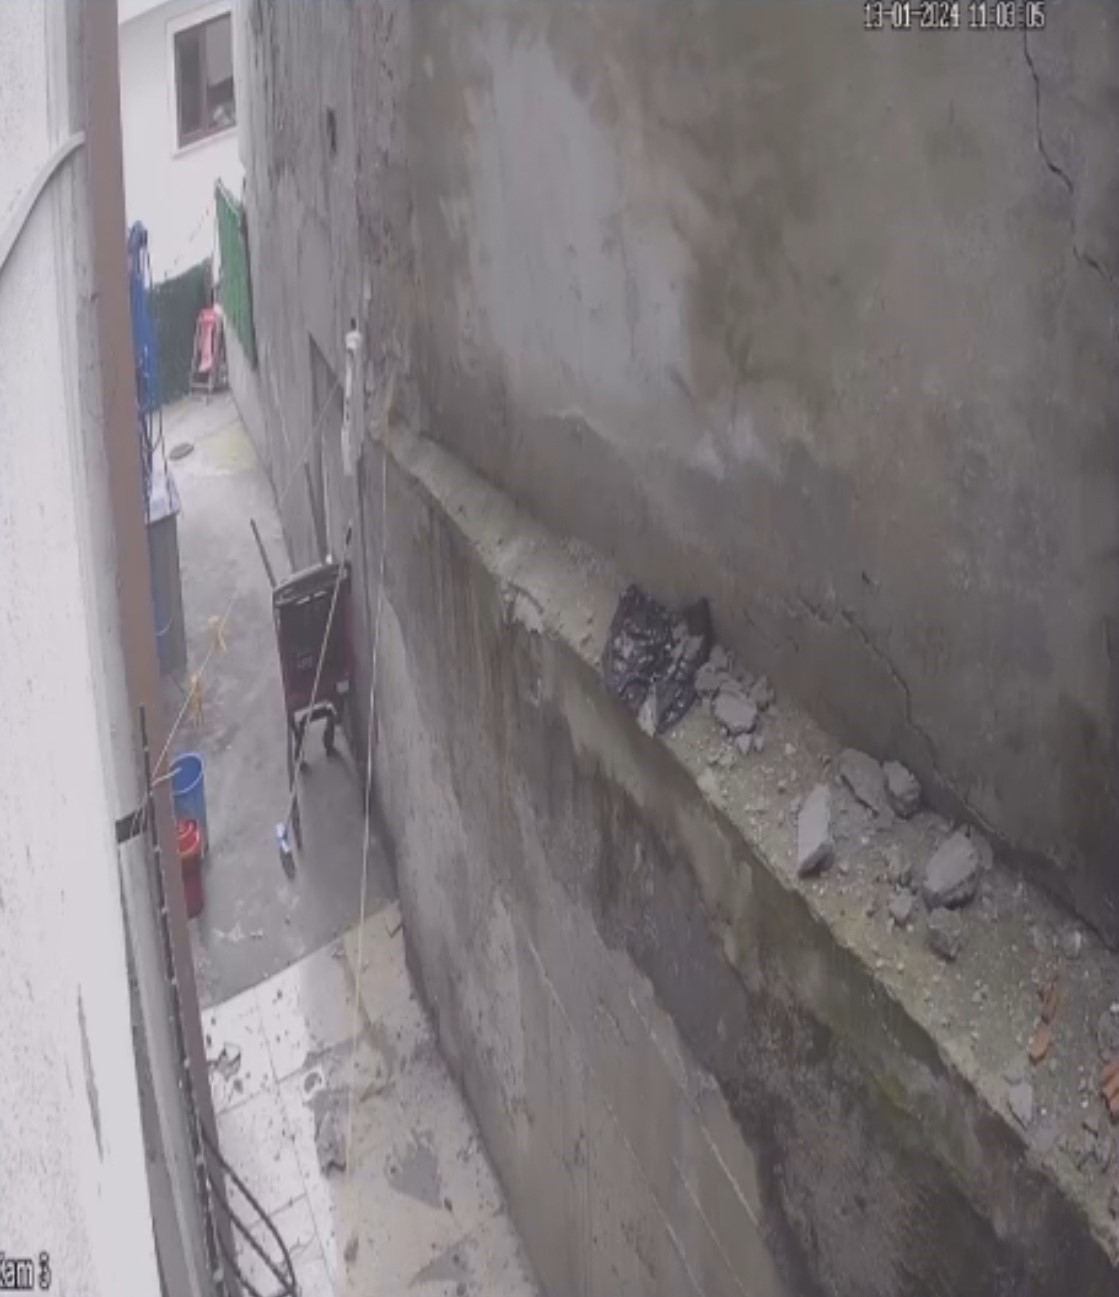 İstanbul’da korku dolu anlar kamerada: Kepçenin vurduğu duvar yerle bir oldu
